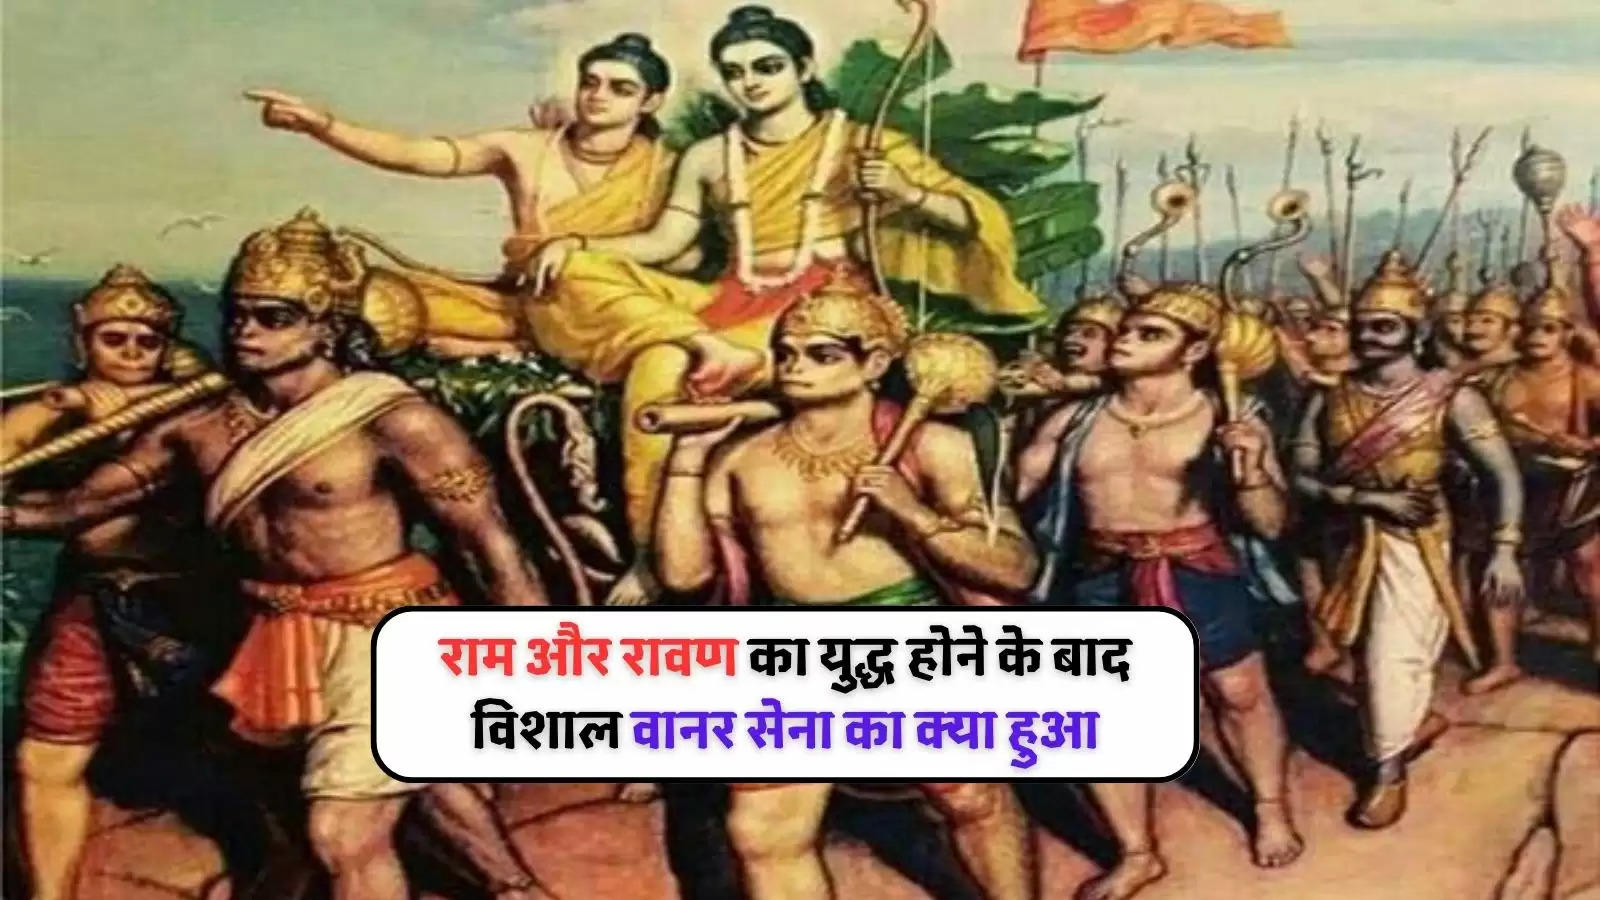 Vanara Sena after Ramayana